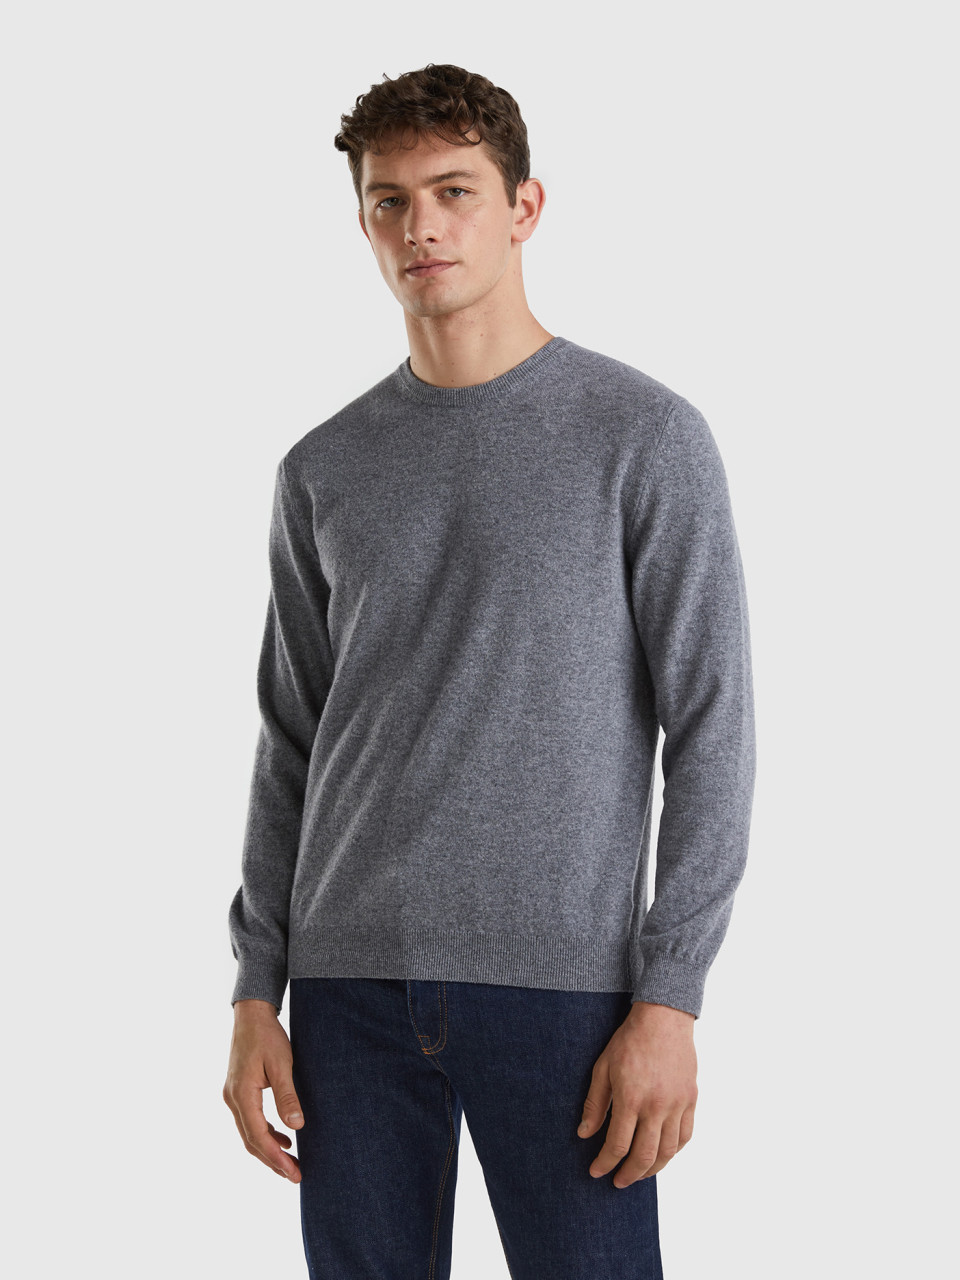 Benetton, Dark Gray Crew Neck Sweater In Pure Merino Wool, Dark Gray, Men